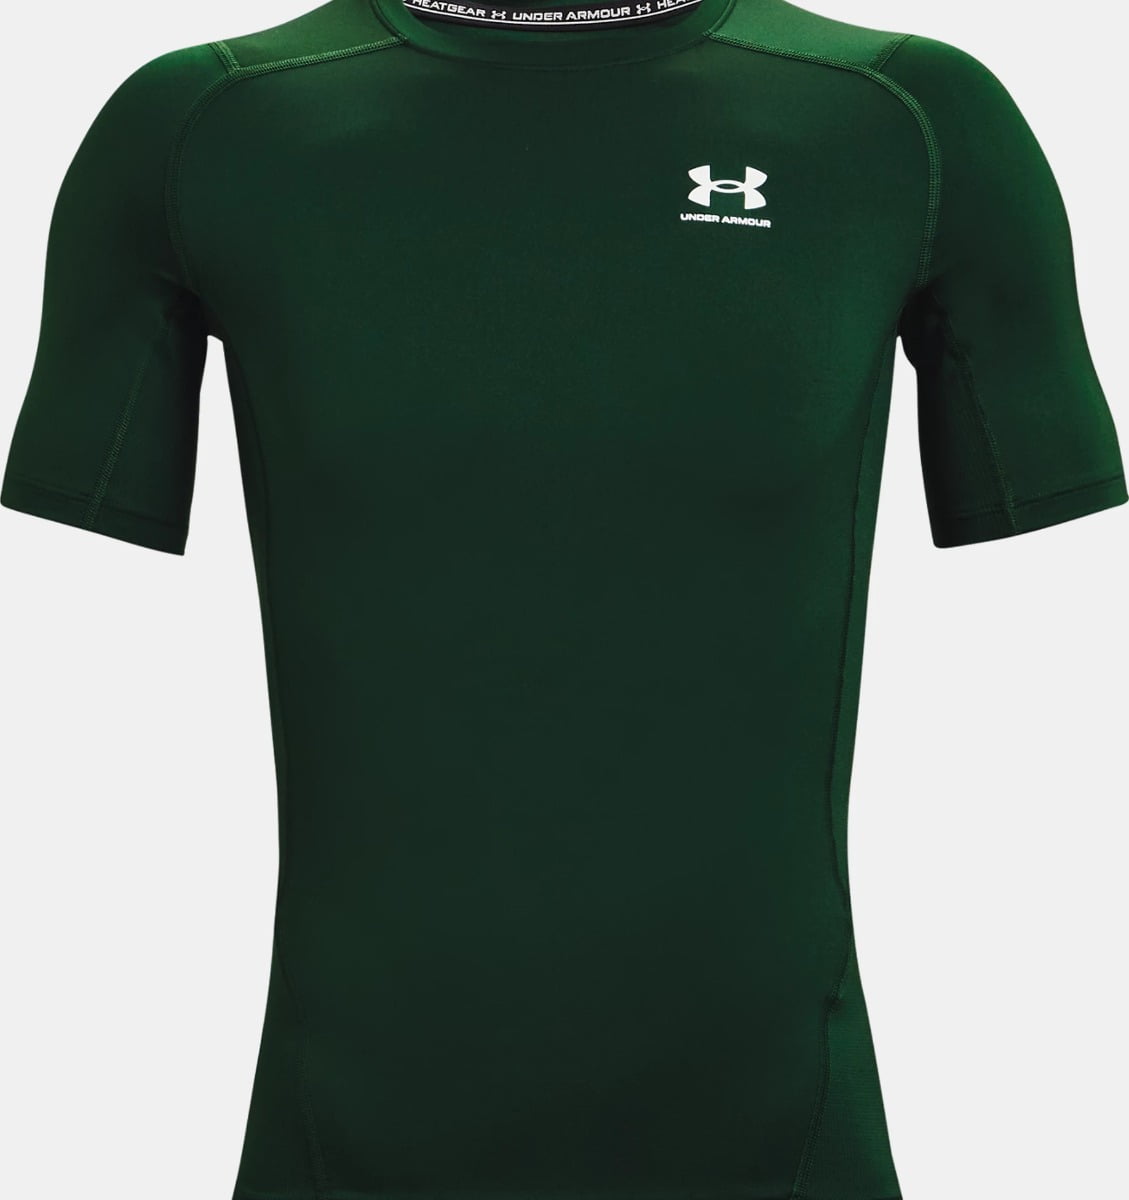 UA HG Armour Comp SS T-Shirt (Black)-1361518-001